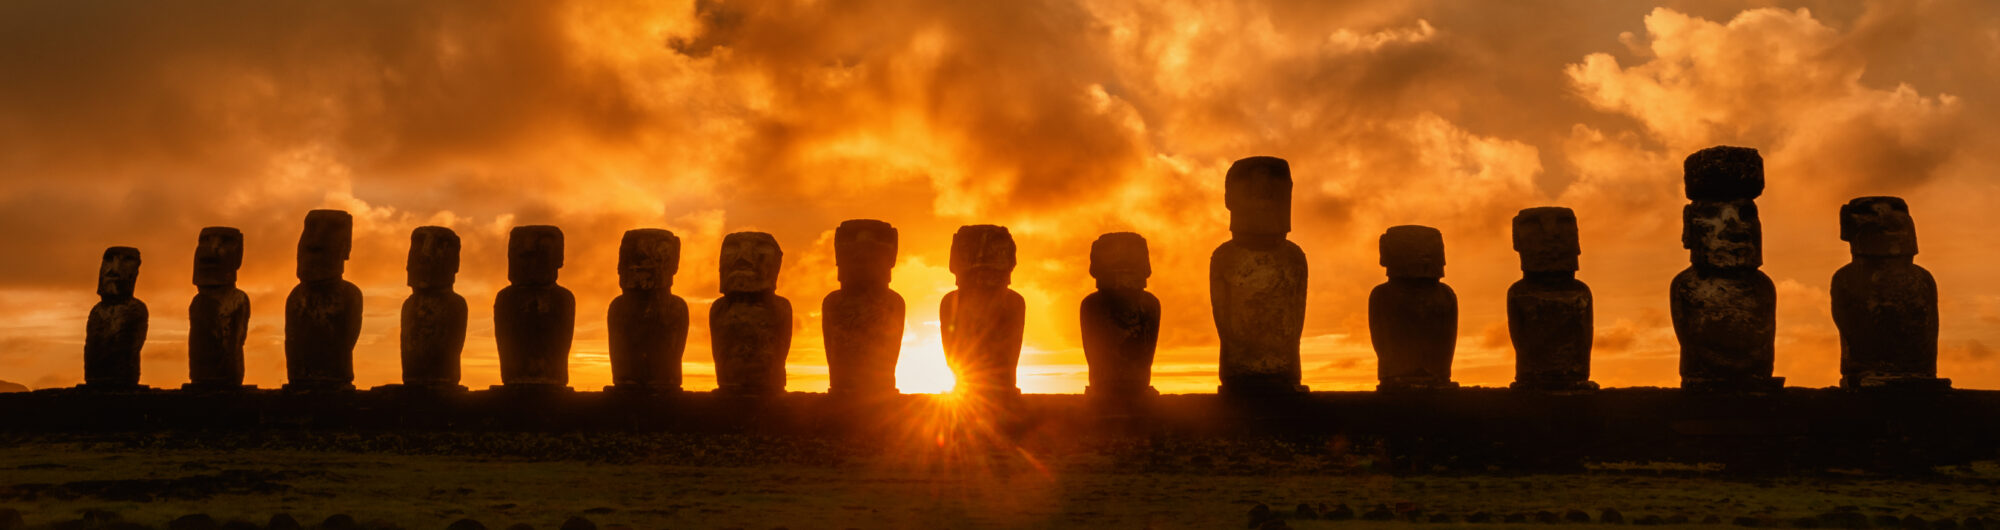 Wyspa Wielkanocna Posągi Moai